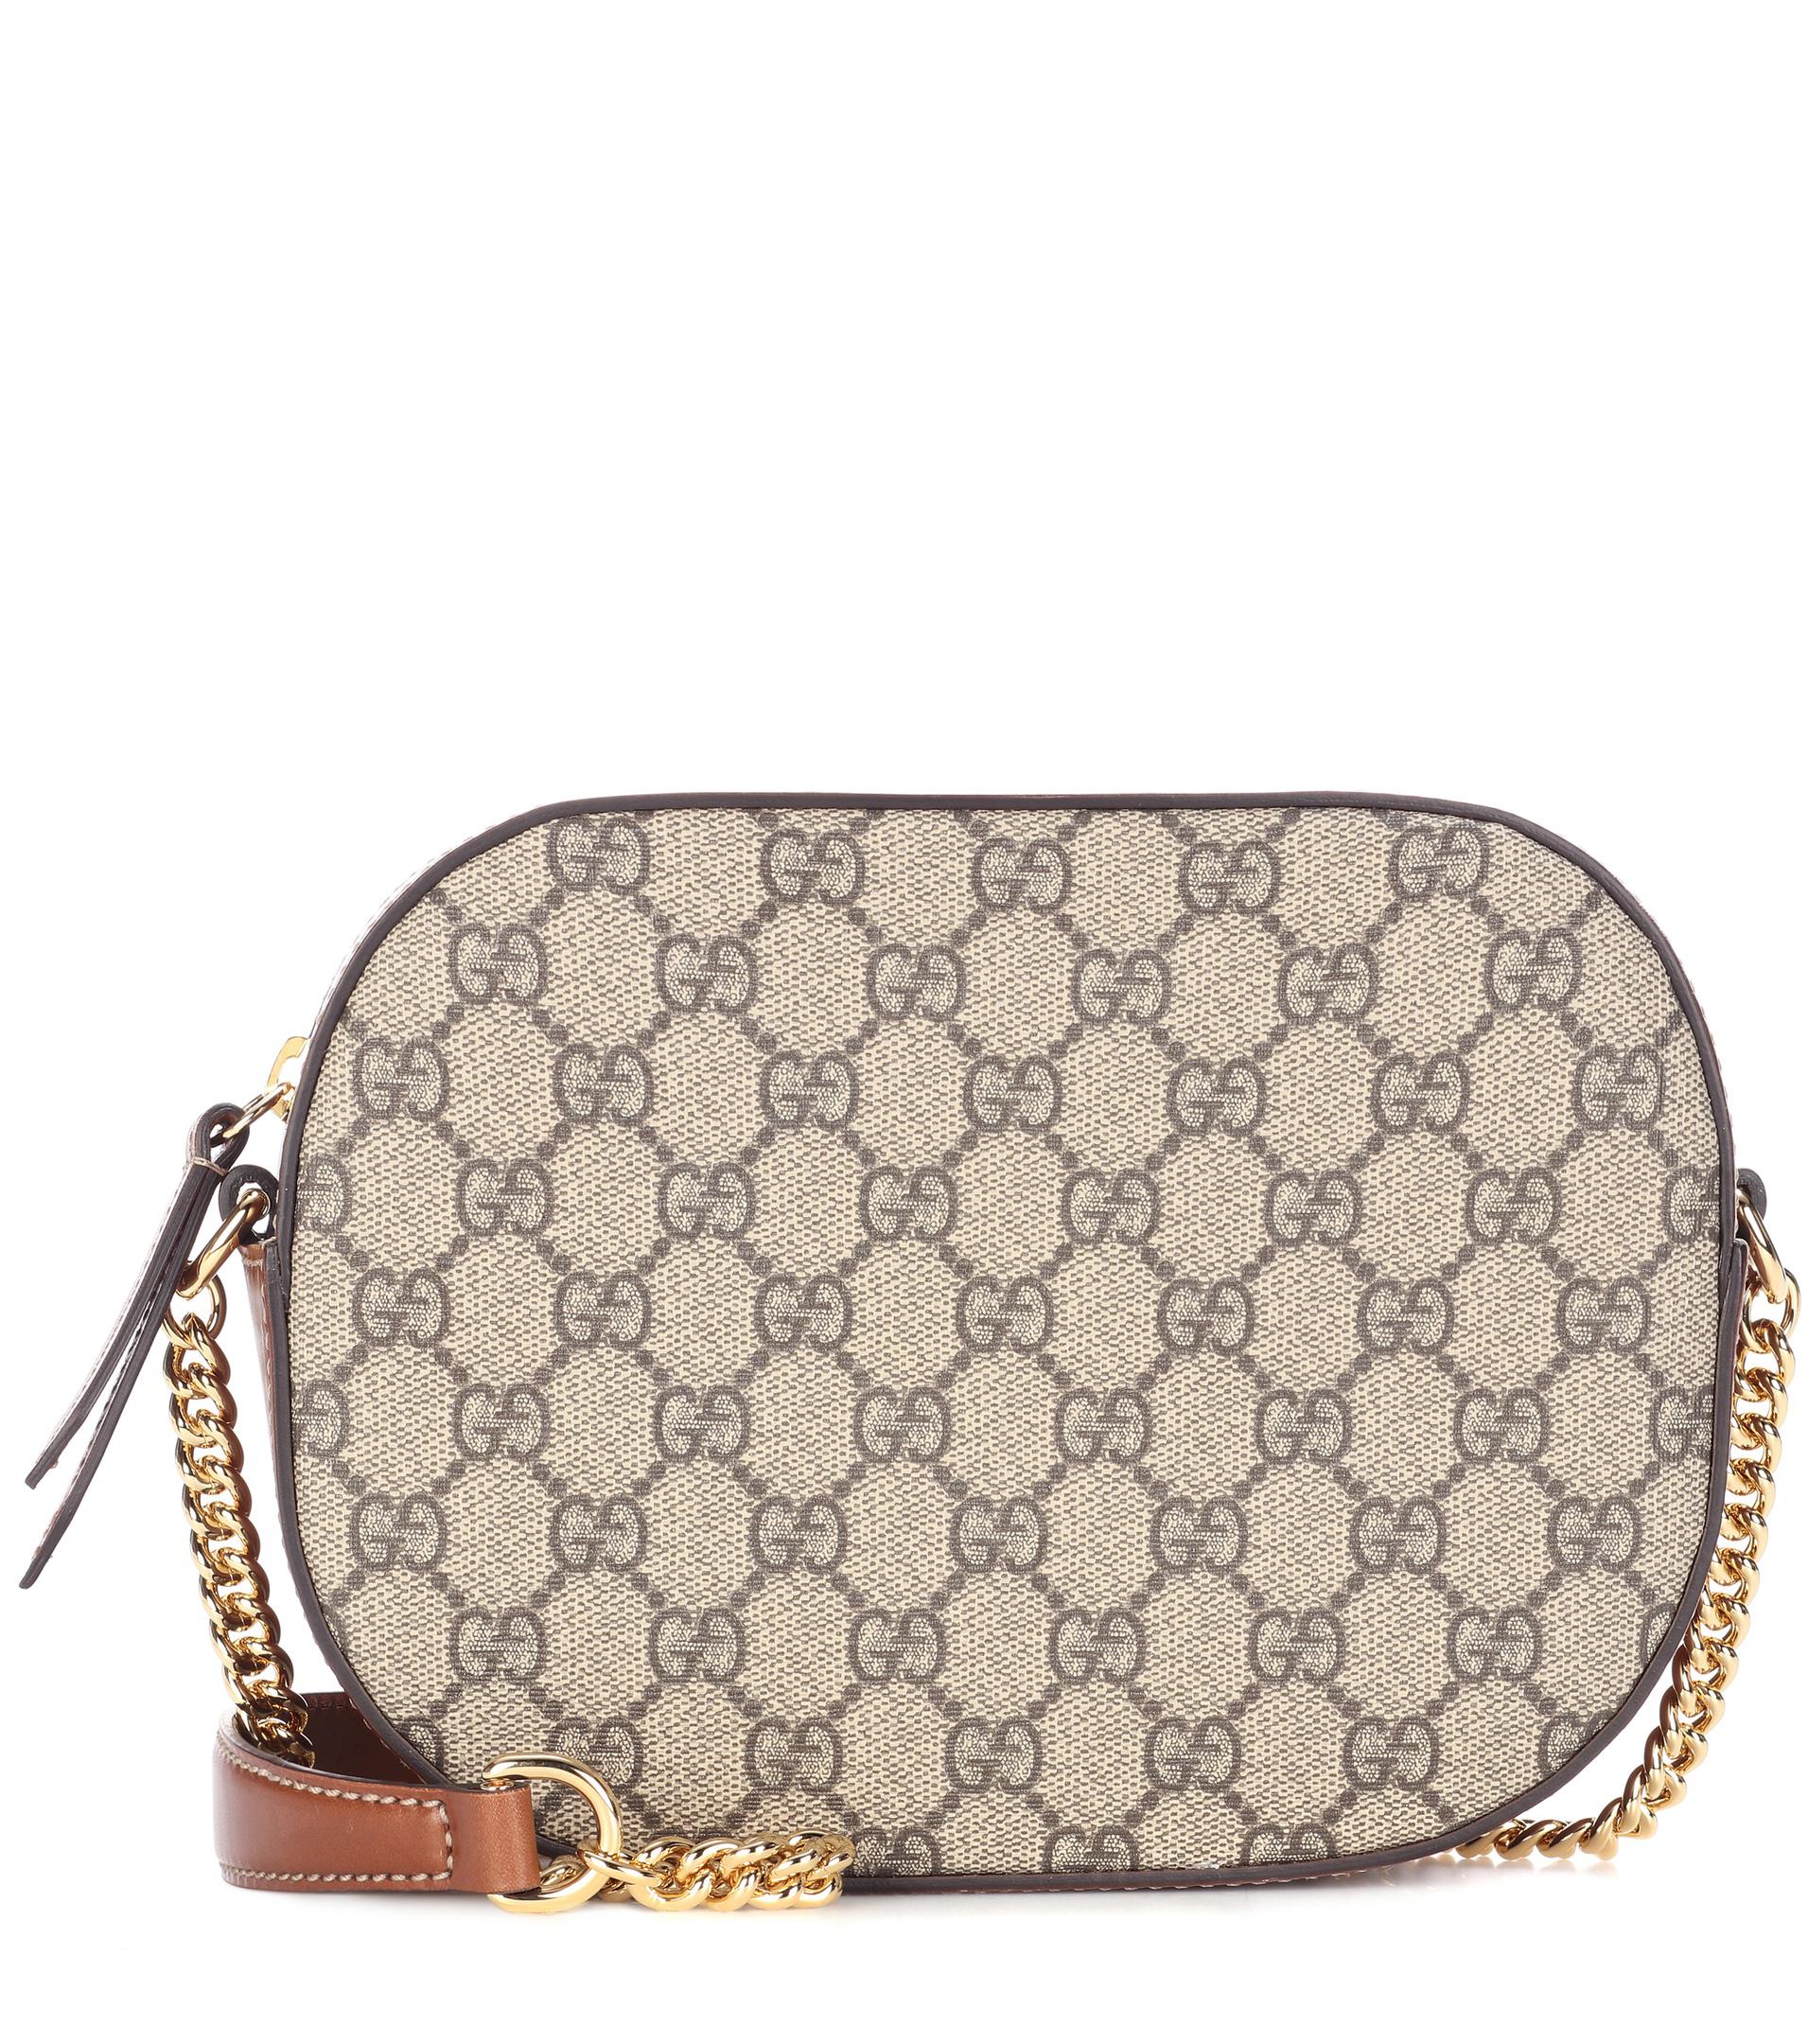 Gucci Canvas GG Supreme Mini Chain Bag in Brown - Lyst